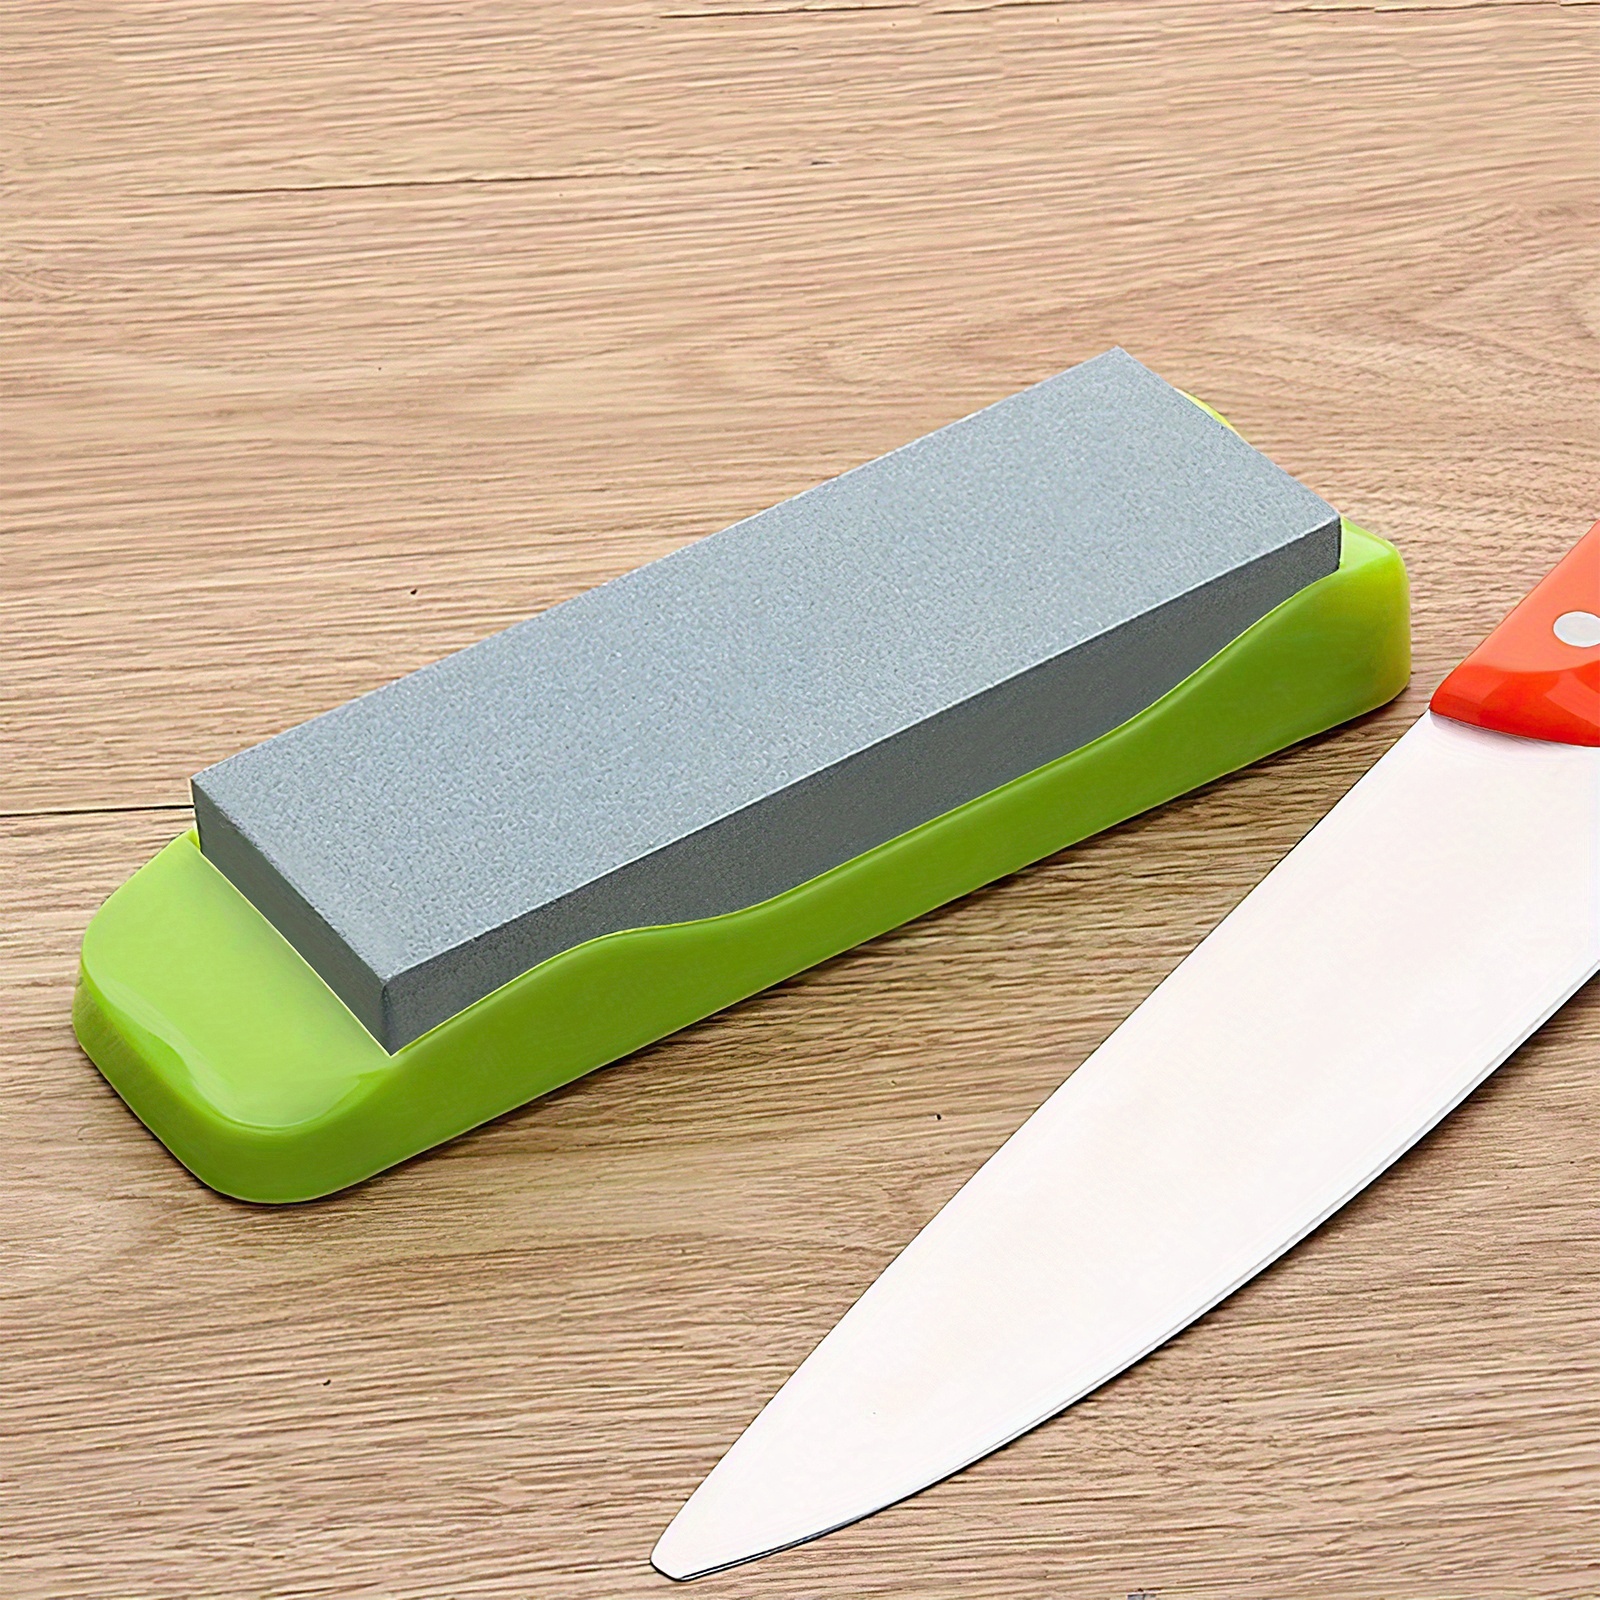 Handheld Knife Sharpener, Portable Knife Sharpening Stone For